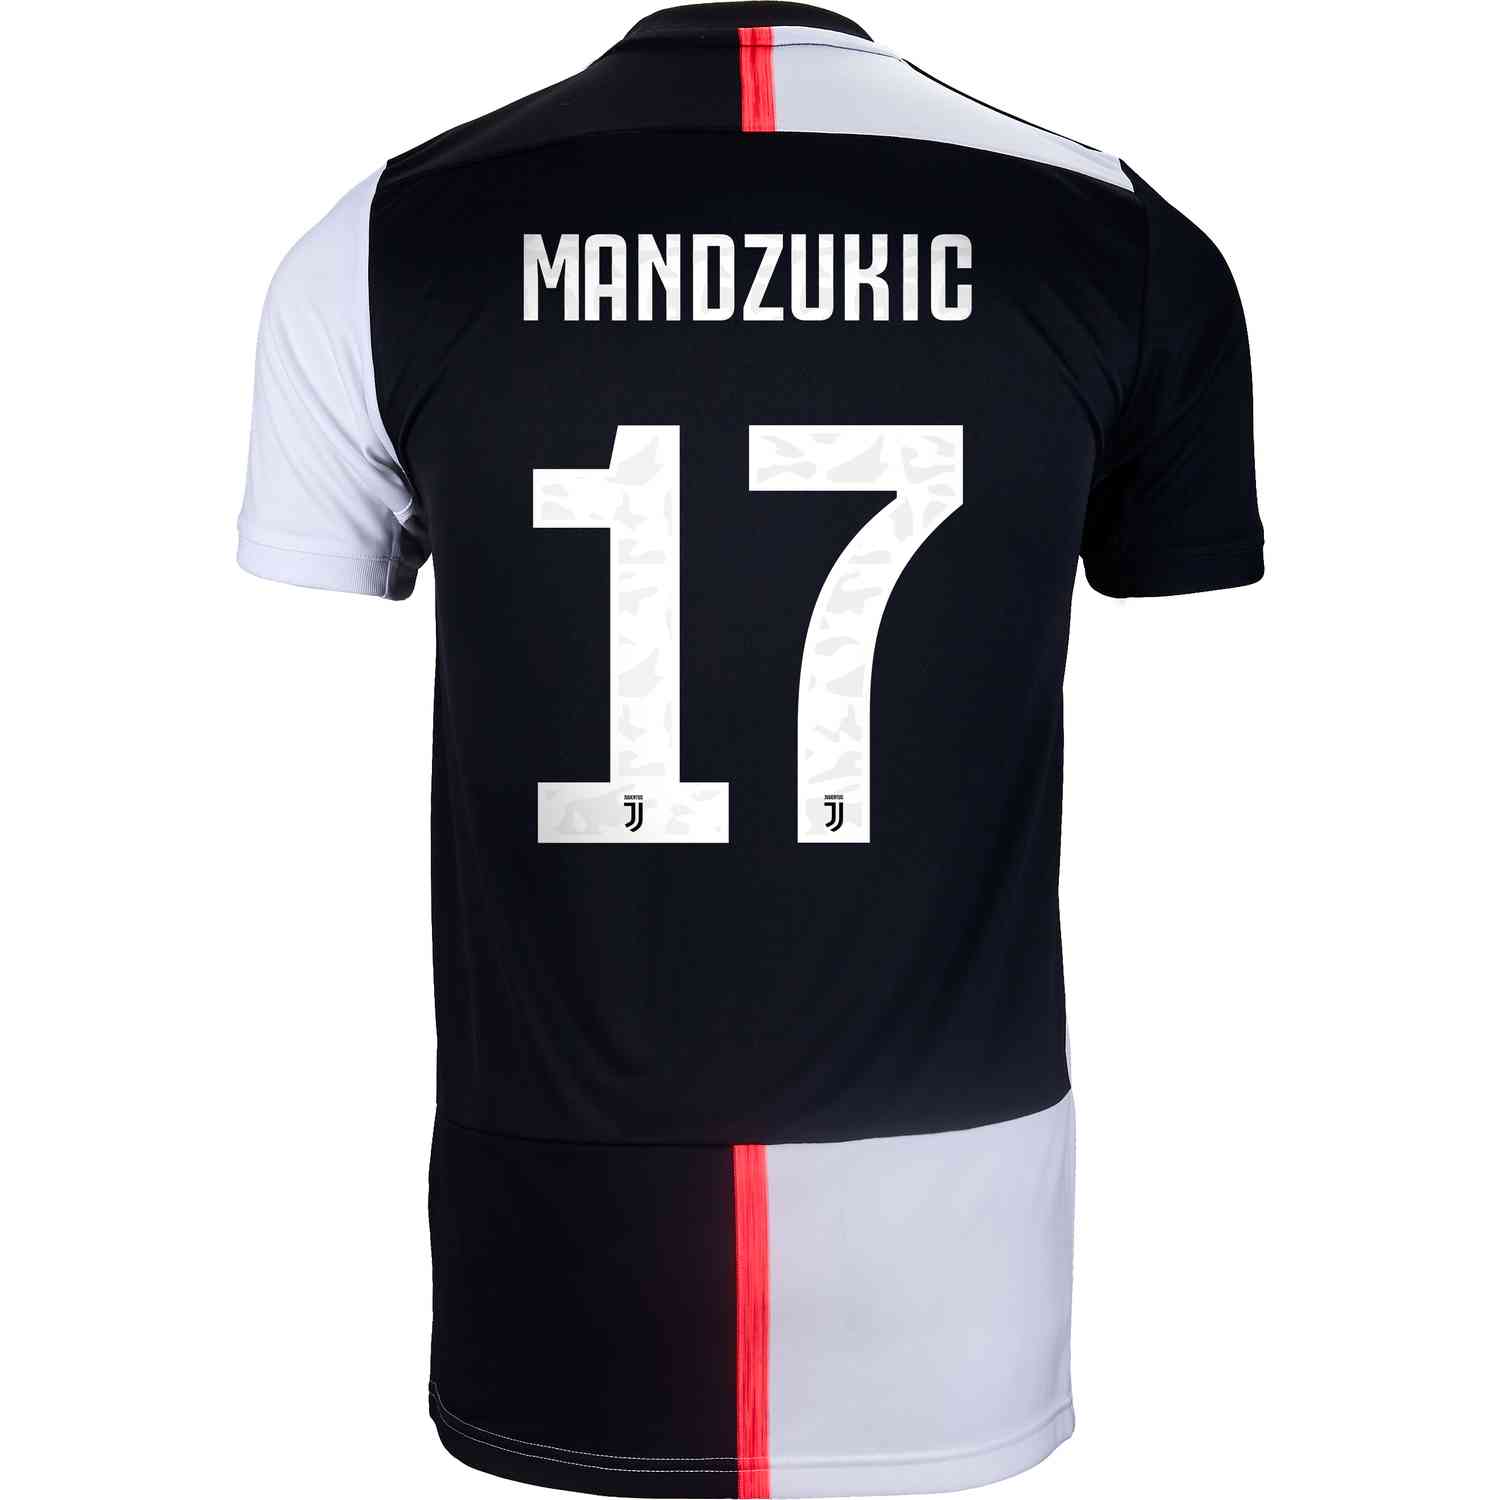 2019/20 adidas Mario Mandzukic Juventus 